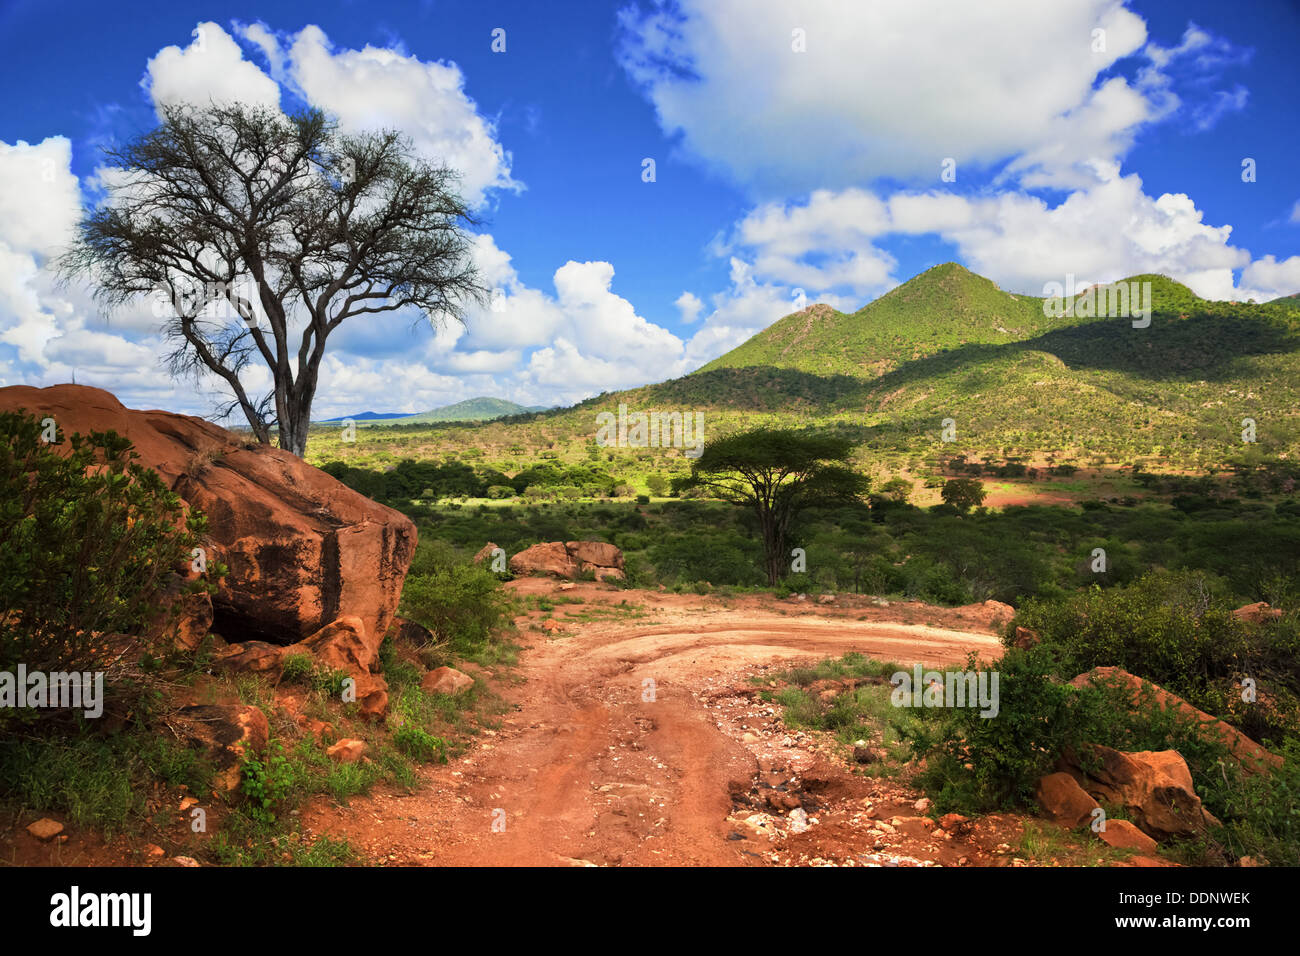 La masse rouge chemin de terre et bush avec paysage de savane en Afrique. L'Ouest de Tsavo, au Kenya. Banque D'Images